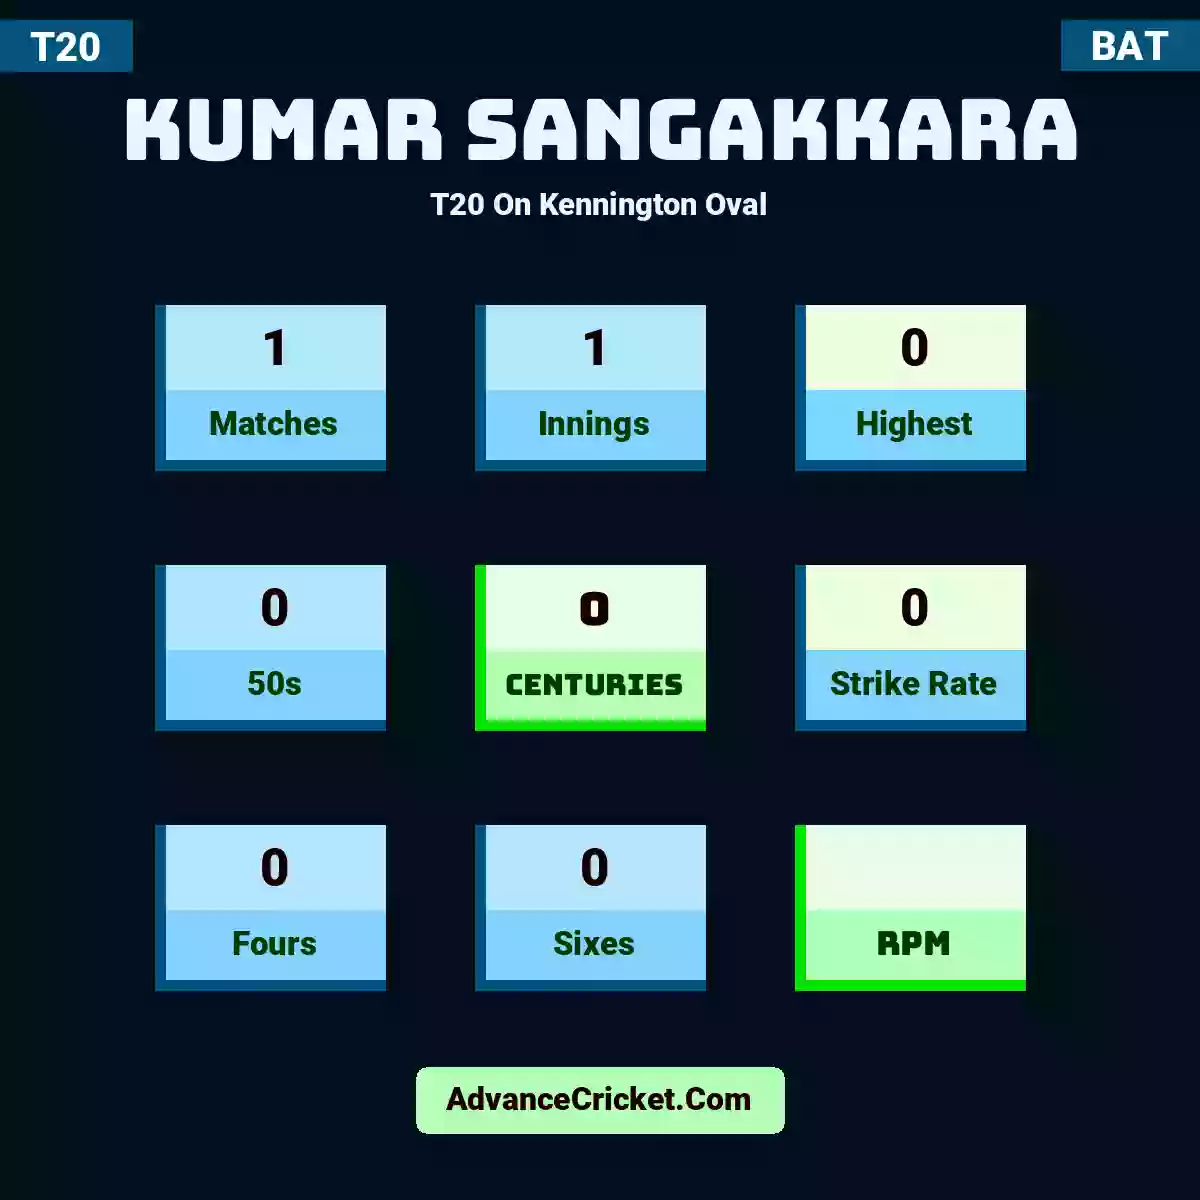 Kumar Sangakkara T20  On Kennington Oval, Kumar Sangakkara played 1 matches, scored 0 runs as highest, 0 half-centuries, and 0 centuries, with a strike rate of 0. K.Sangakkara hit 0 fours and 0 sixes.